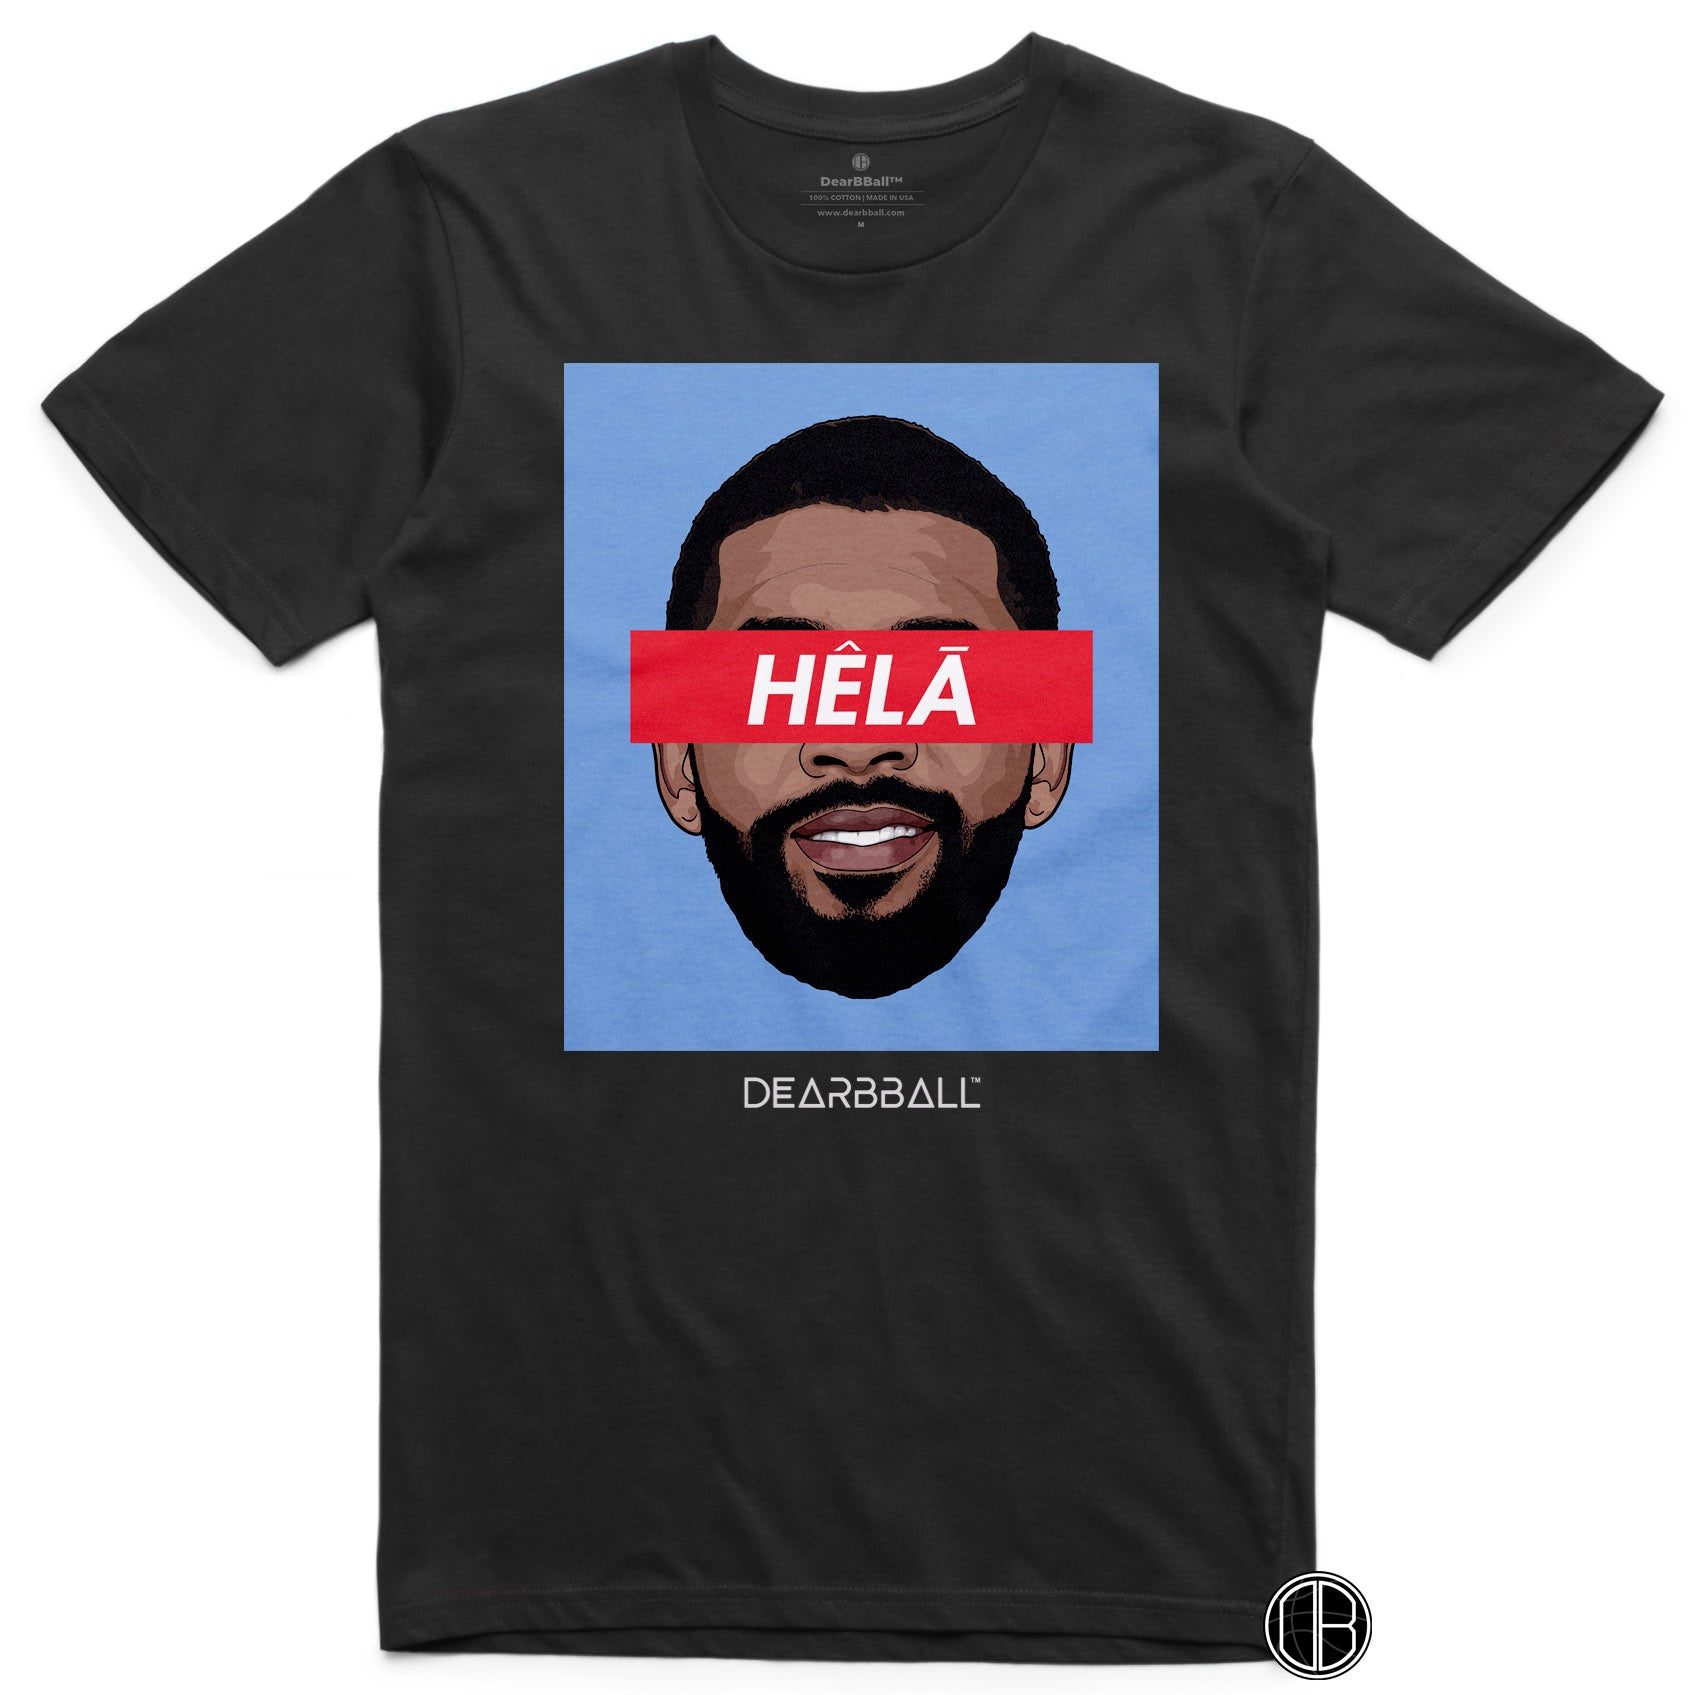 DearBBall T-Shirt - HELA Blue Edition